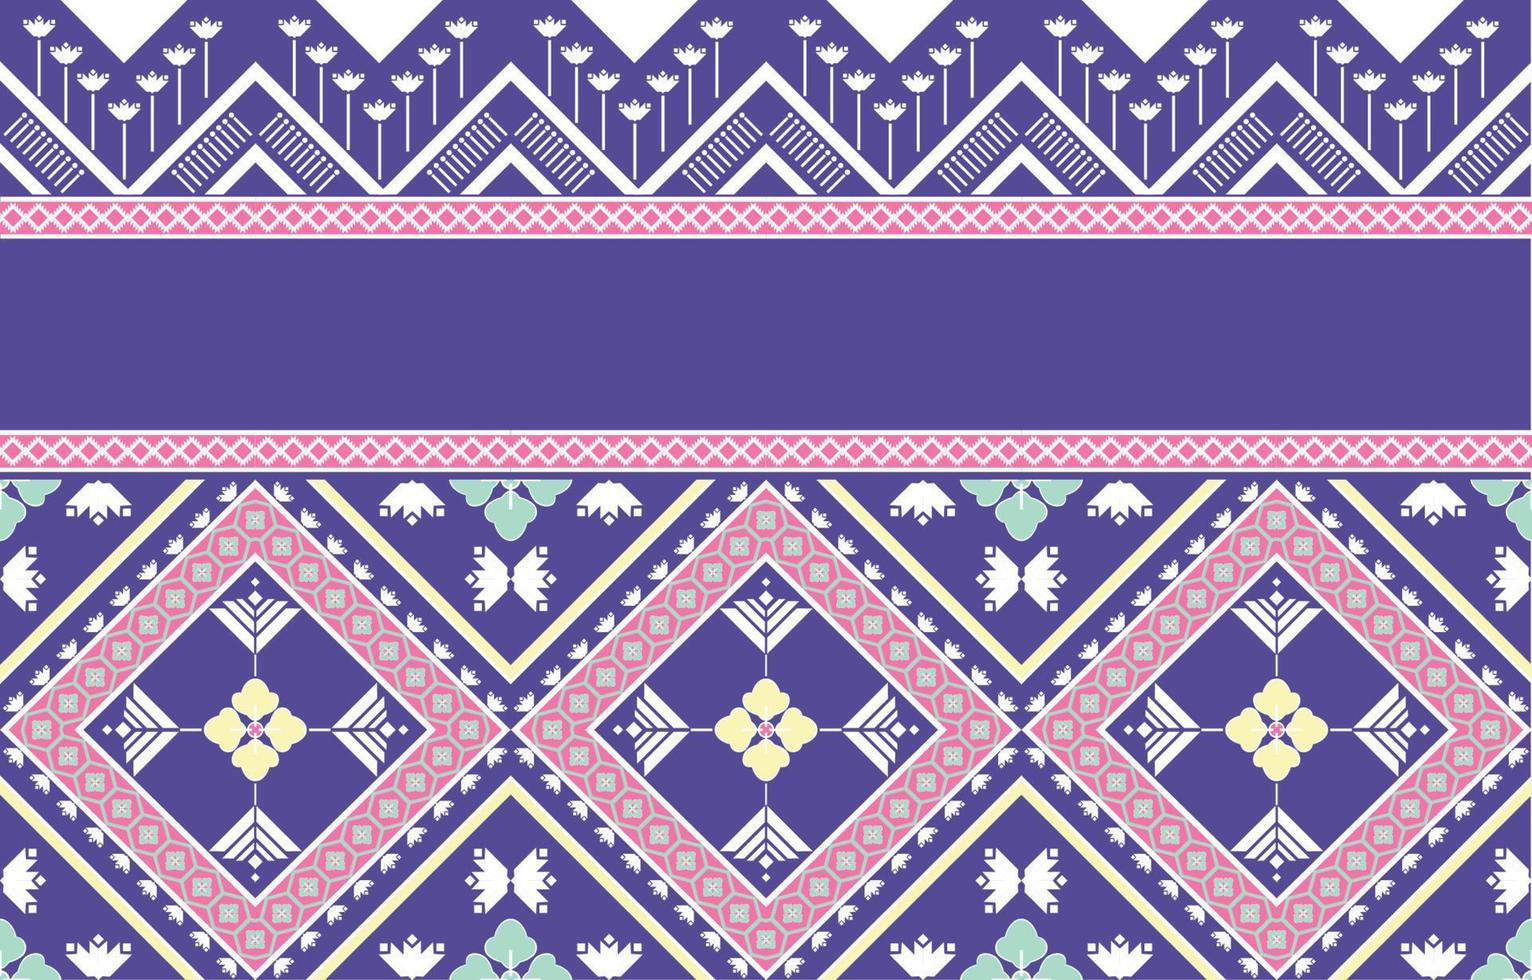 meetkundig etnisch oosters ikat naadloos patroon traditioneel ontwerp voor achtergrond,tapijt,behang,kleding,inwikkeling,batik,stof illustratie. borduurwerk stijl. vector